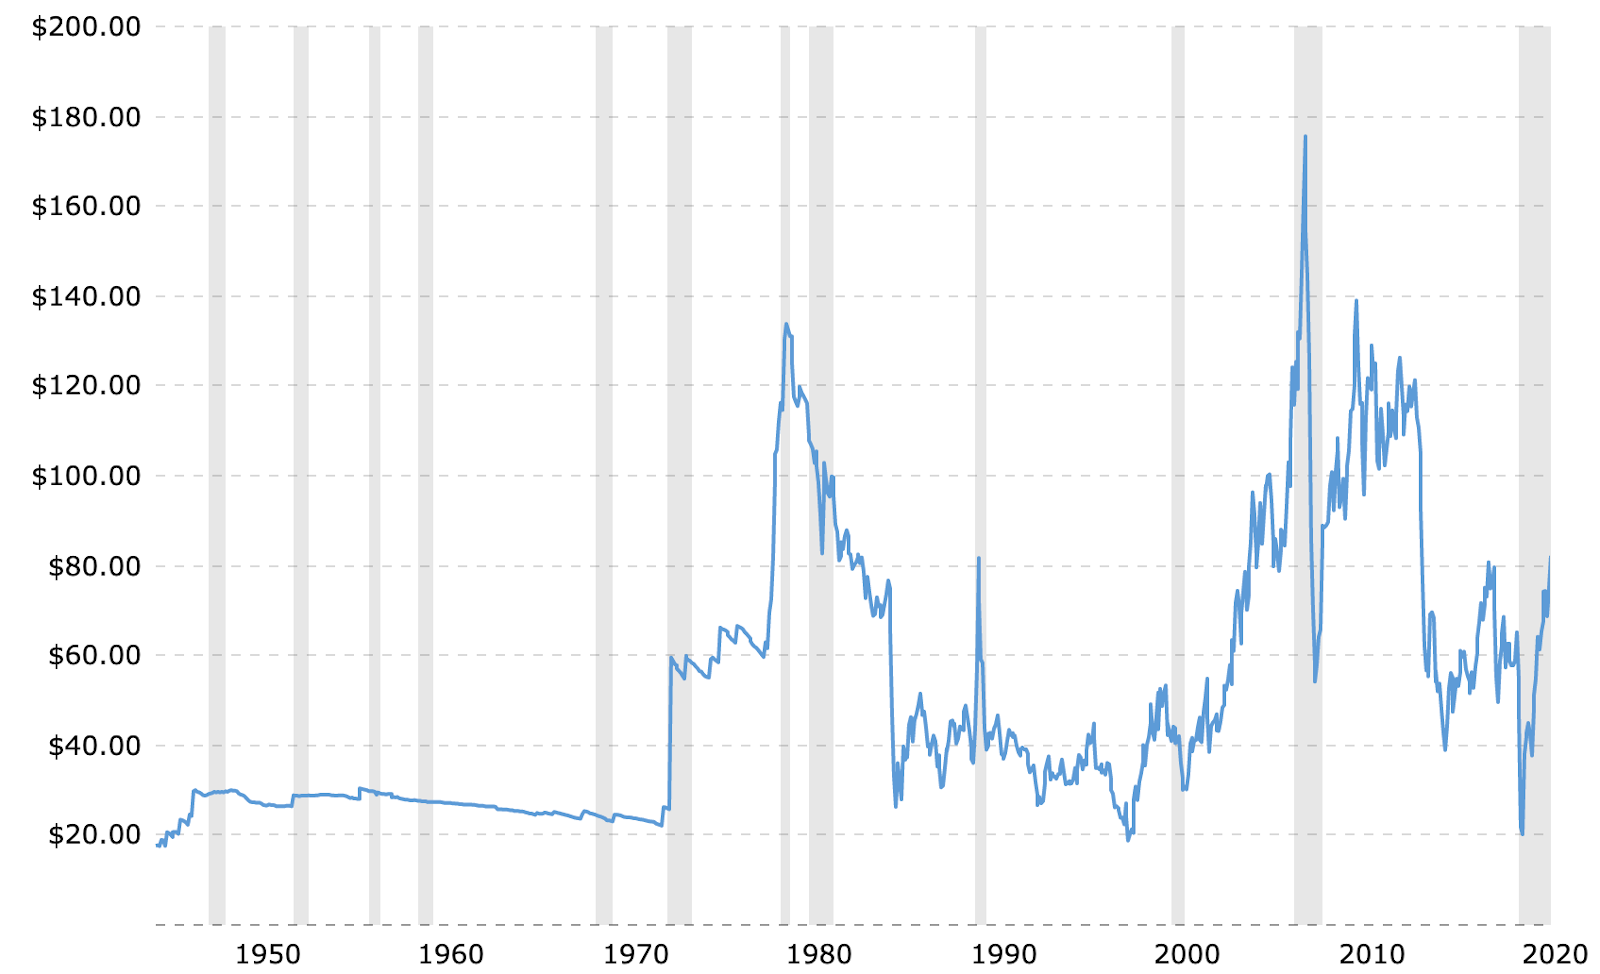 oil price graph